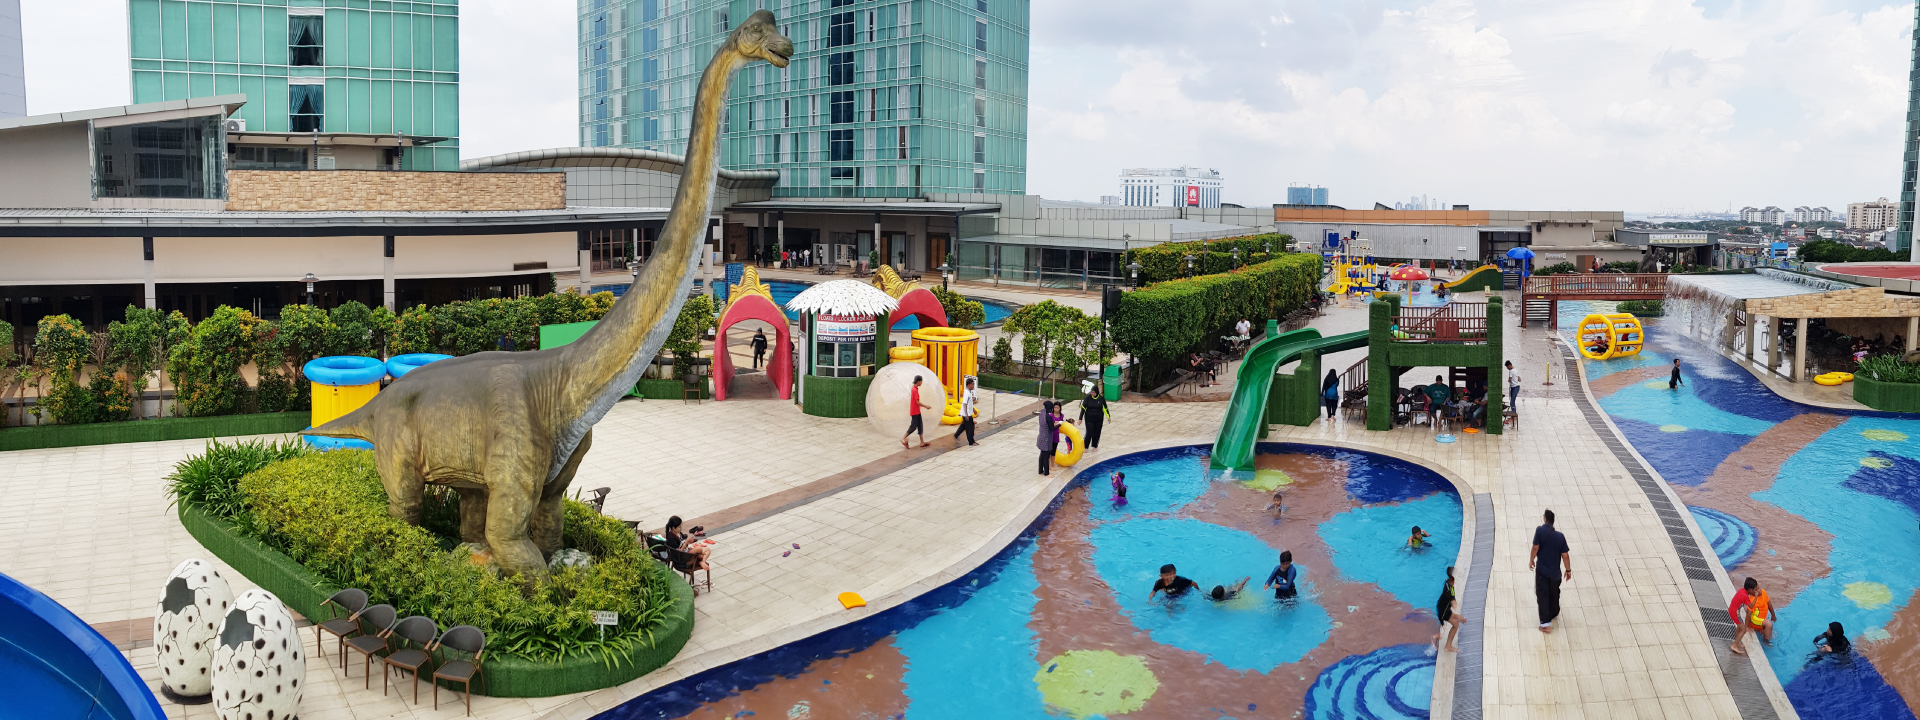 Dinosaur Alive Water Theme Park, Johor Bahru